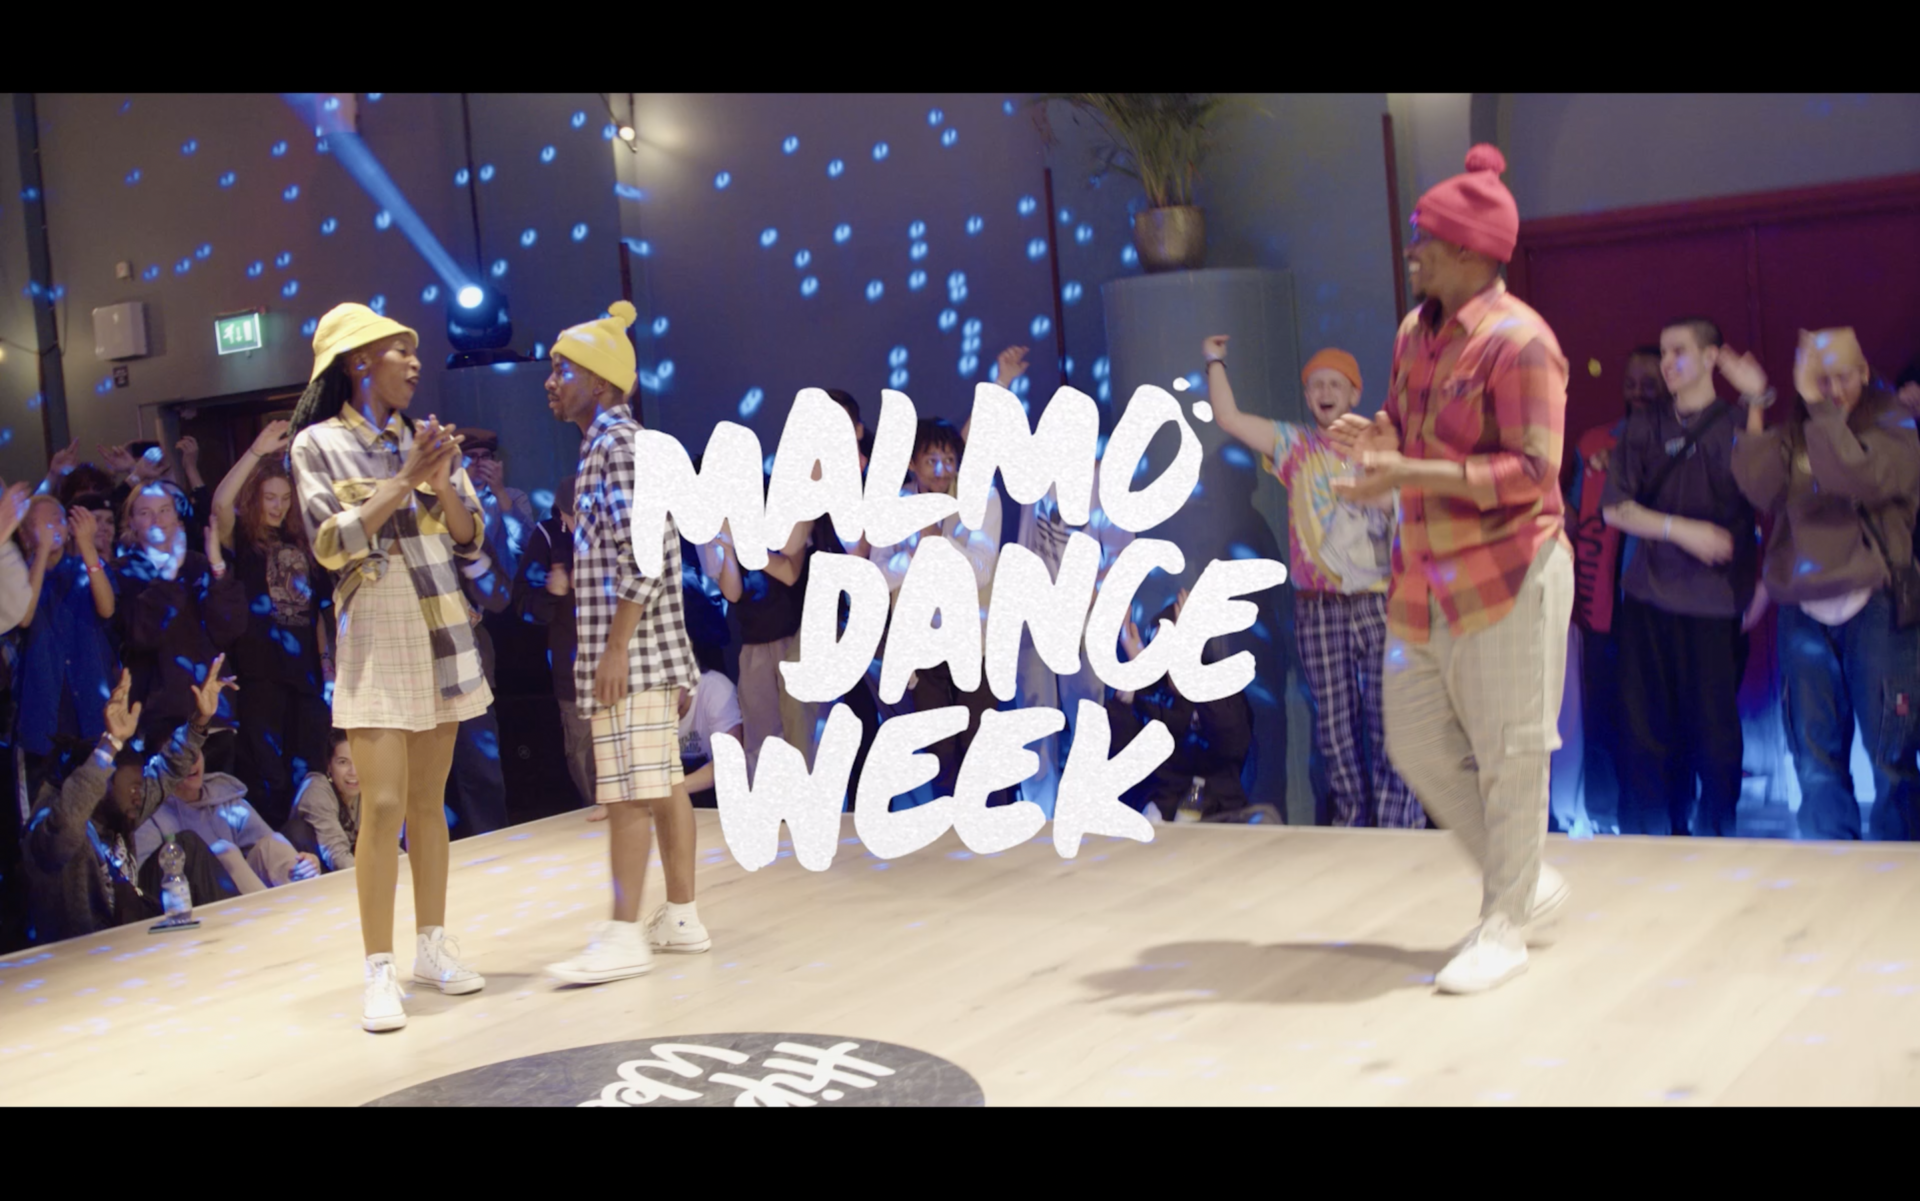 Malmö Dance Week 2022